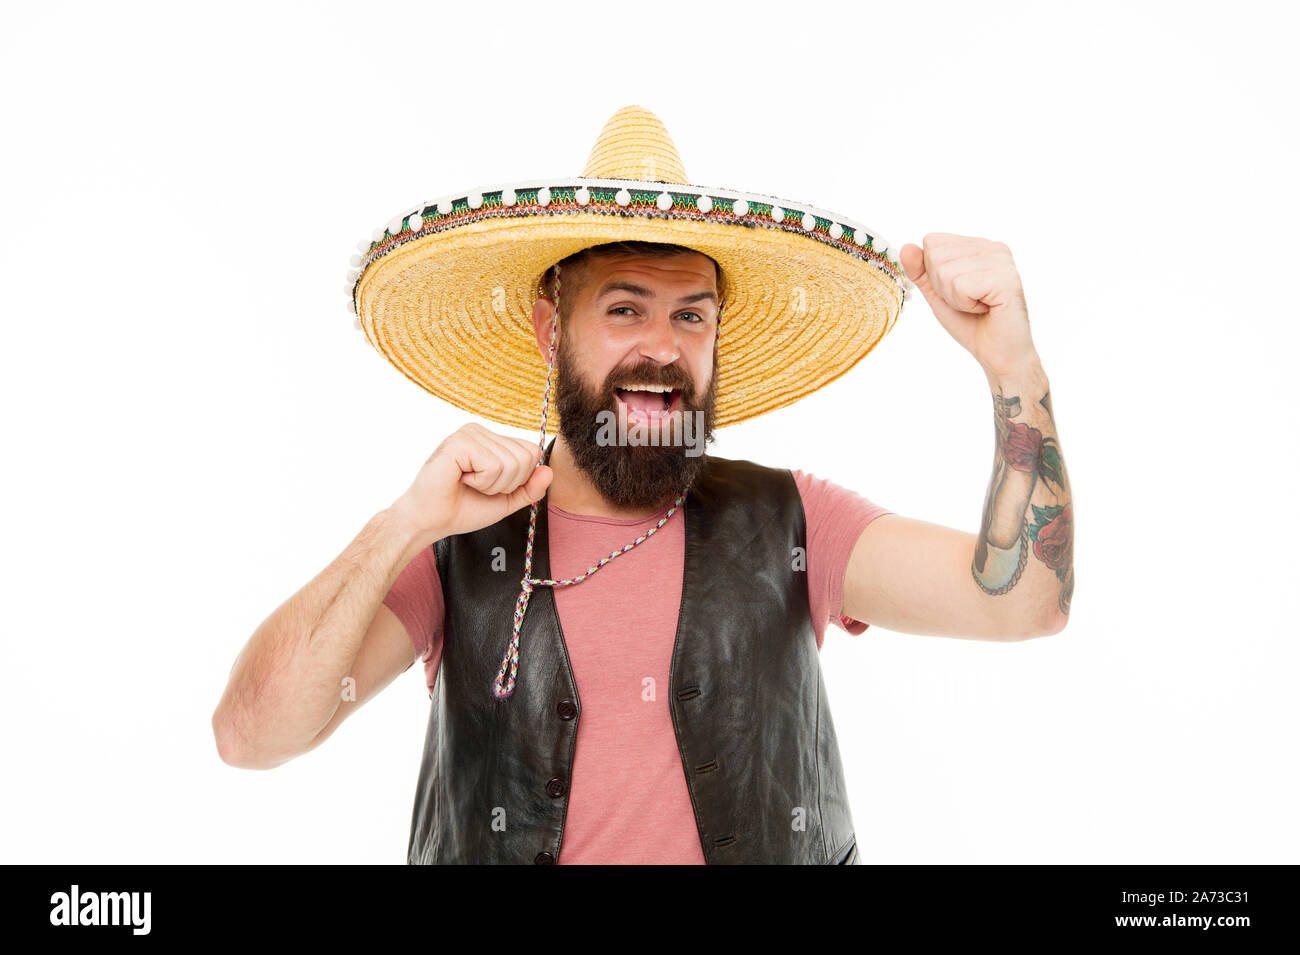 Hinzufügen hat zu seinem spanischen Kostüm. Bärtiger Mann lächelnd in  traditionellen sombrero Hut. Happy Hipster mit Bart und Schnurrbart legere  Kleidung und Mexican Hat. Mexikanische Mann in traditionellen Strohhut  Stockfotografie - Alamy